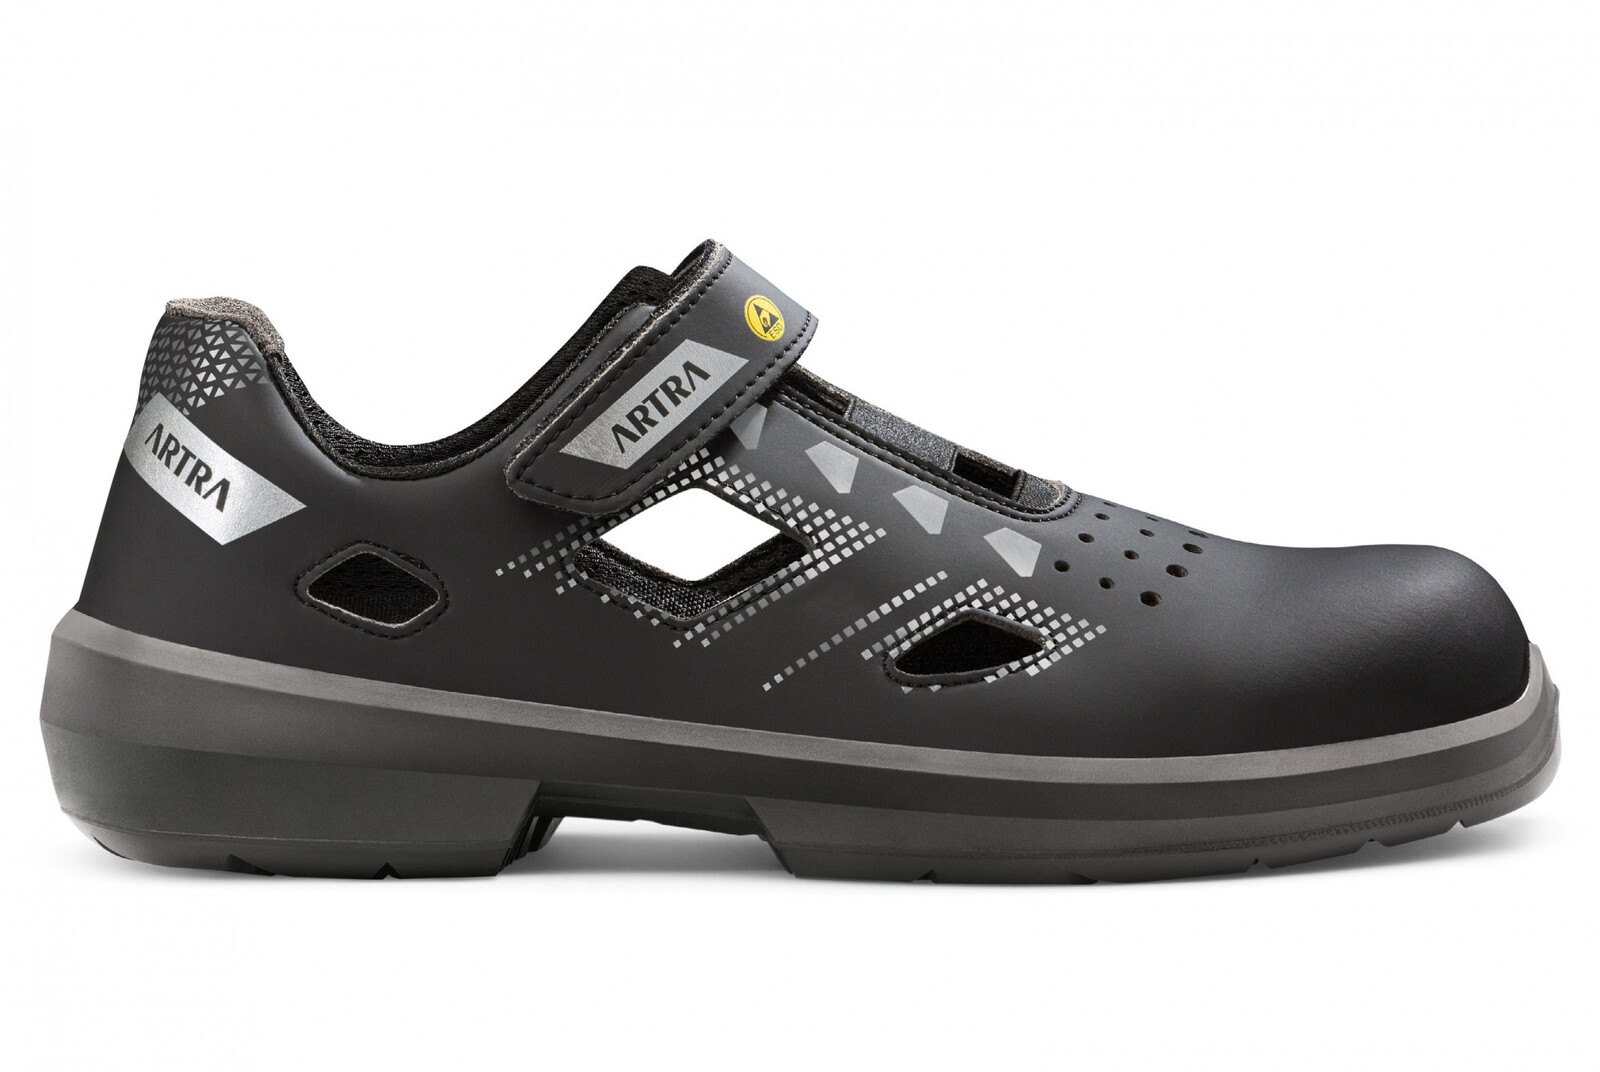 Bezpečnostné sandále Artra Arzo 805 676560 S1 SRC ESD MF - veľkosť: 38, farba: čierna/sivá